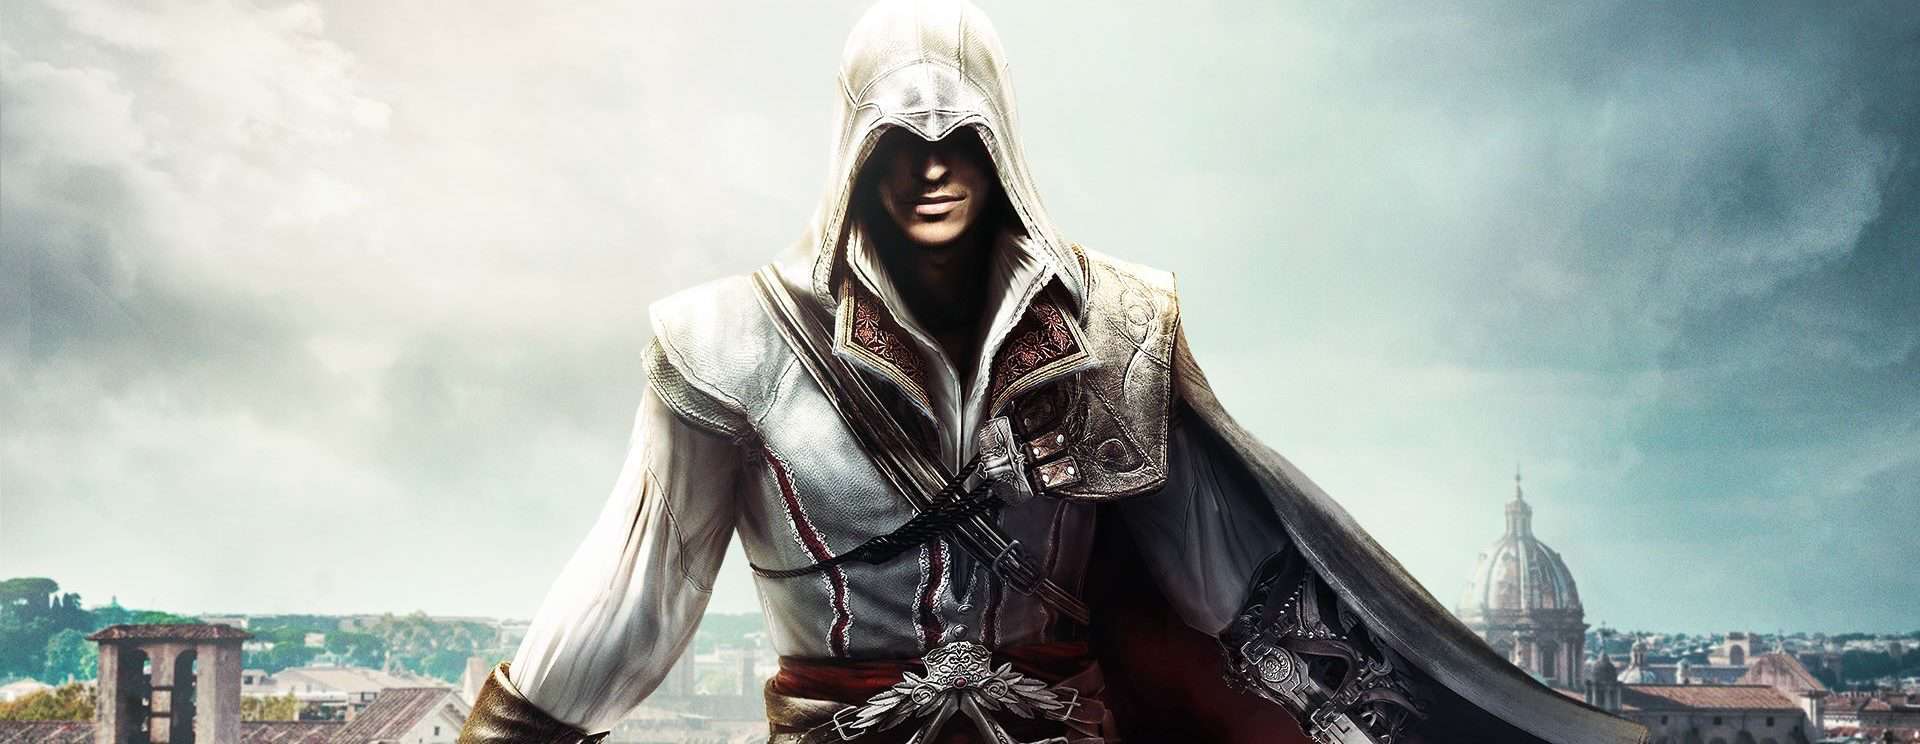 Assassin’s Creed: Netflix chystá seriál podle známé videoherní série | Fandíme filmu